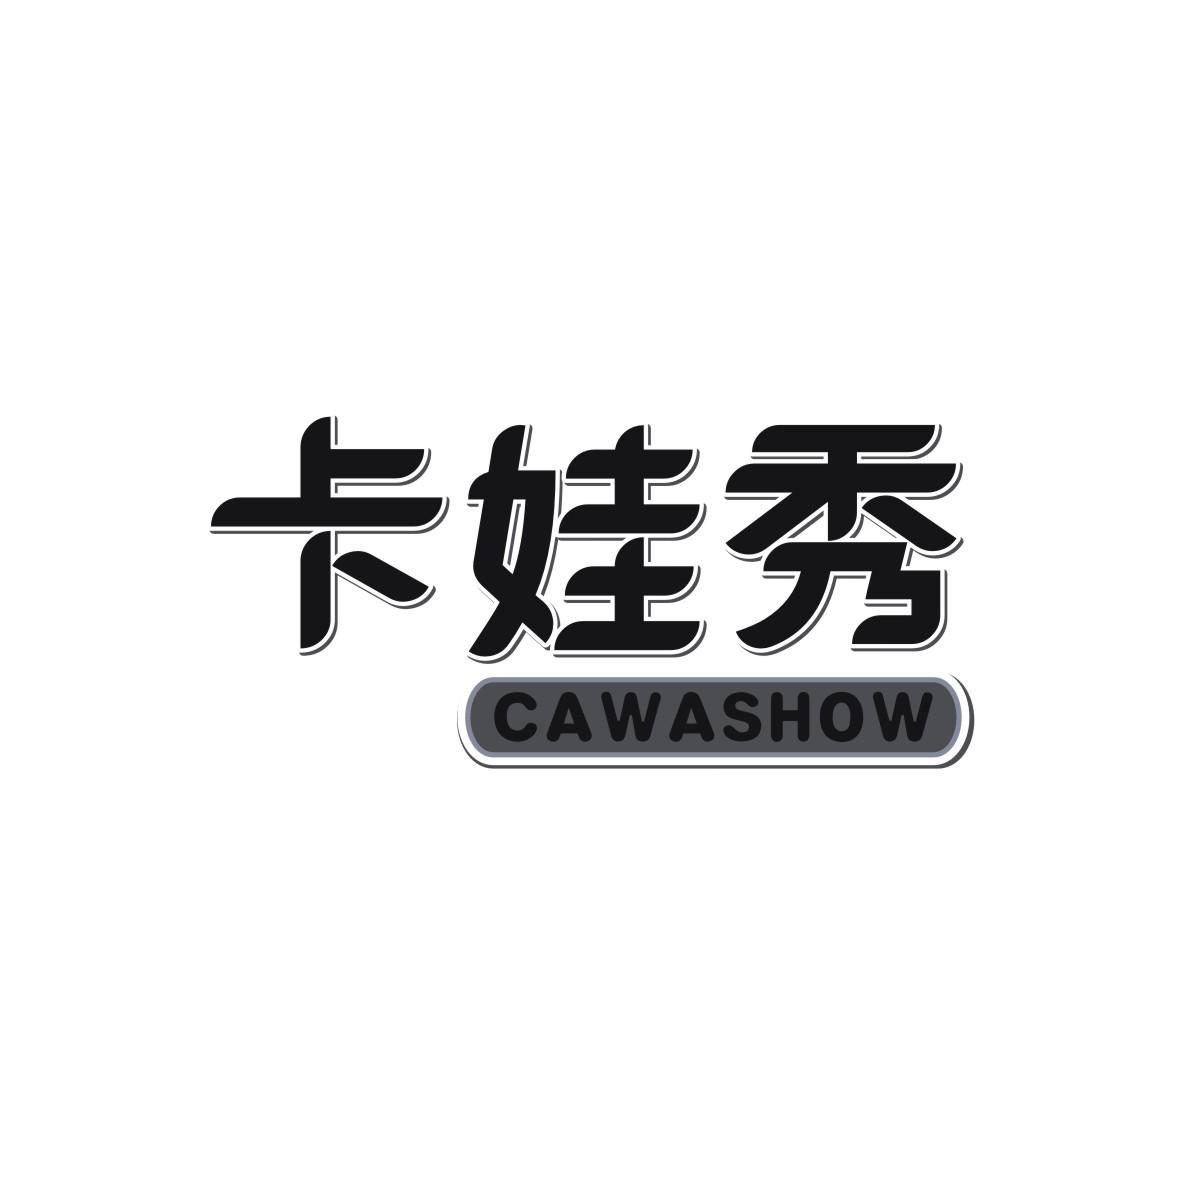  CAWASHOW